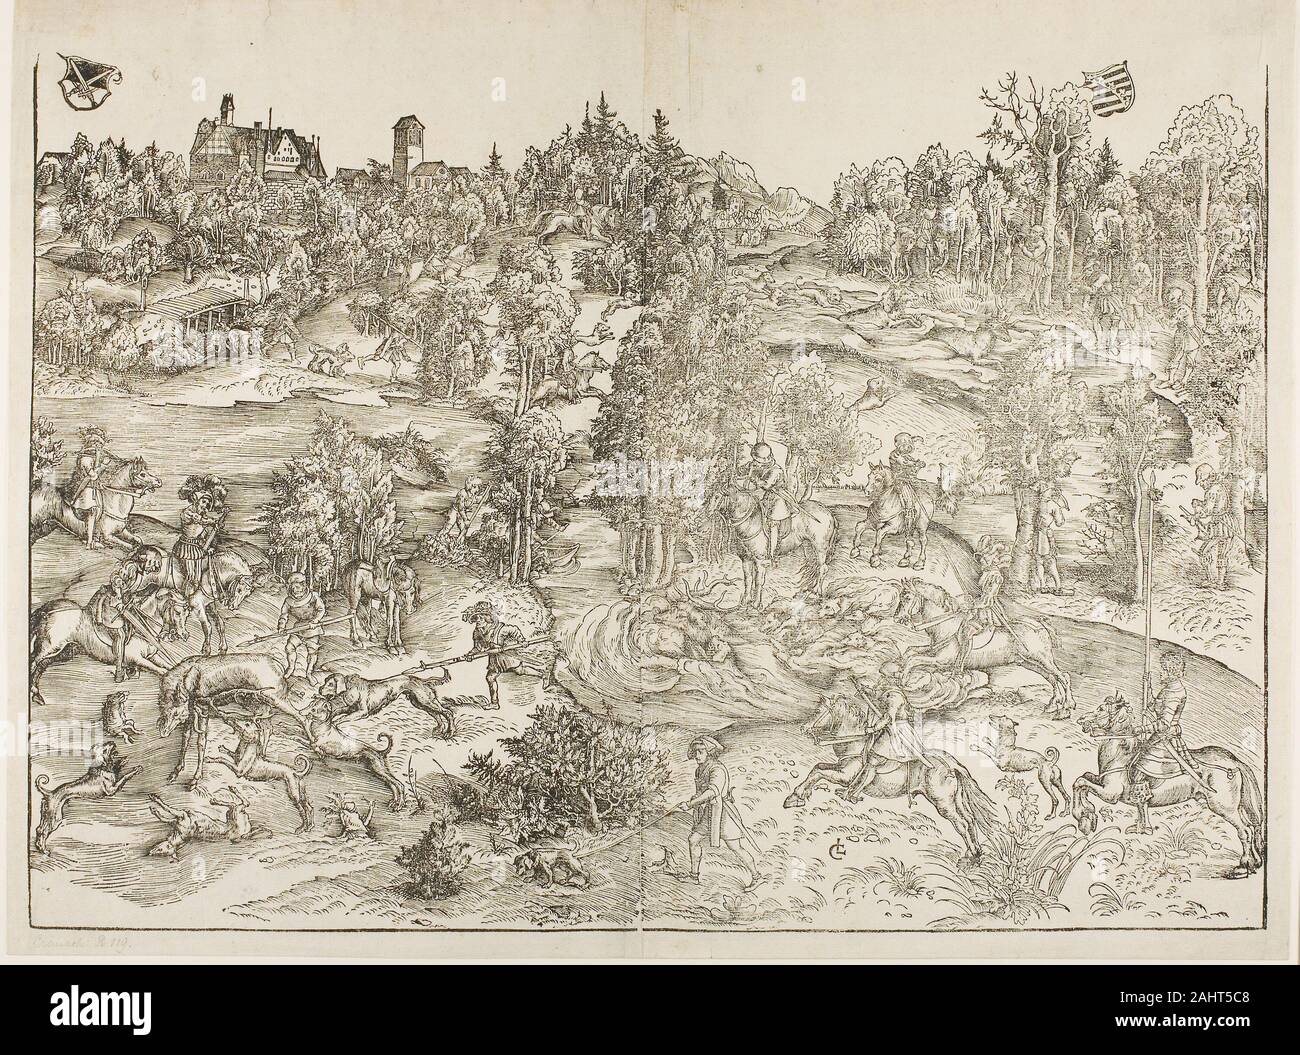 Lucas Cranach, l'Aîné. La chasse au cerf. 1501-1511. L'Allemagne. Gravure sur bois en noir à partir de deux blocs sur deux feuilles de papier vergé crème, rejoint ainsi que le tribunal de l'artiste prince électeur Frédéric de Saxe, Lucas Cranach le Vieux a eu le privilège de représenter le divertissement courtois de la chasse au cerf. Cranach est réputé pour ses représentations de trophées de chasse dans l'illusion des peintures murales en trompe-l'œil ; ses contemporains même prétendu que son imagerie animale était si réelle que les oiseaux a essayé de se poser sur le bois des cerfs peints. La grande échelle de cette gravure sur bois en deux parties admis Cranach à : abondance de détails de Banque D'Images